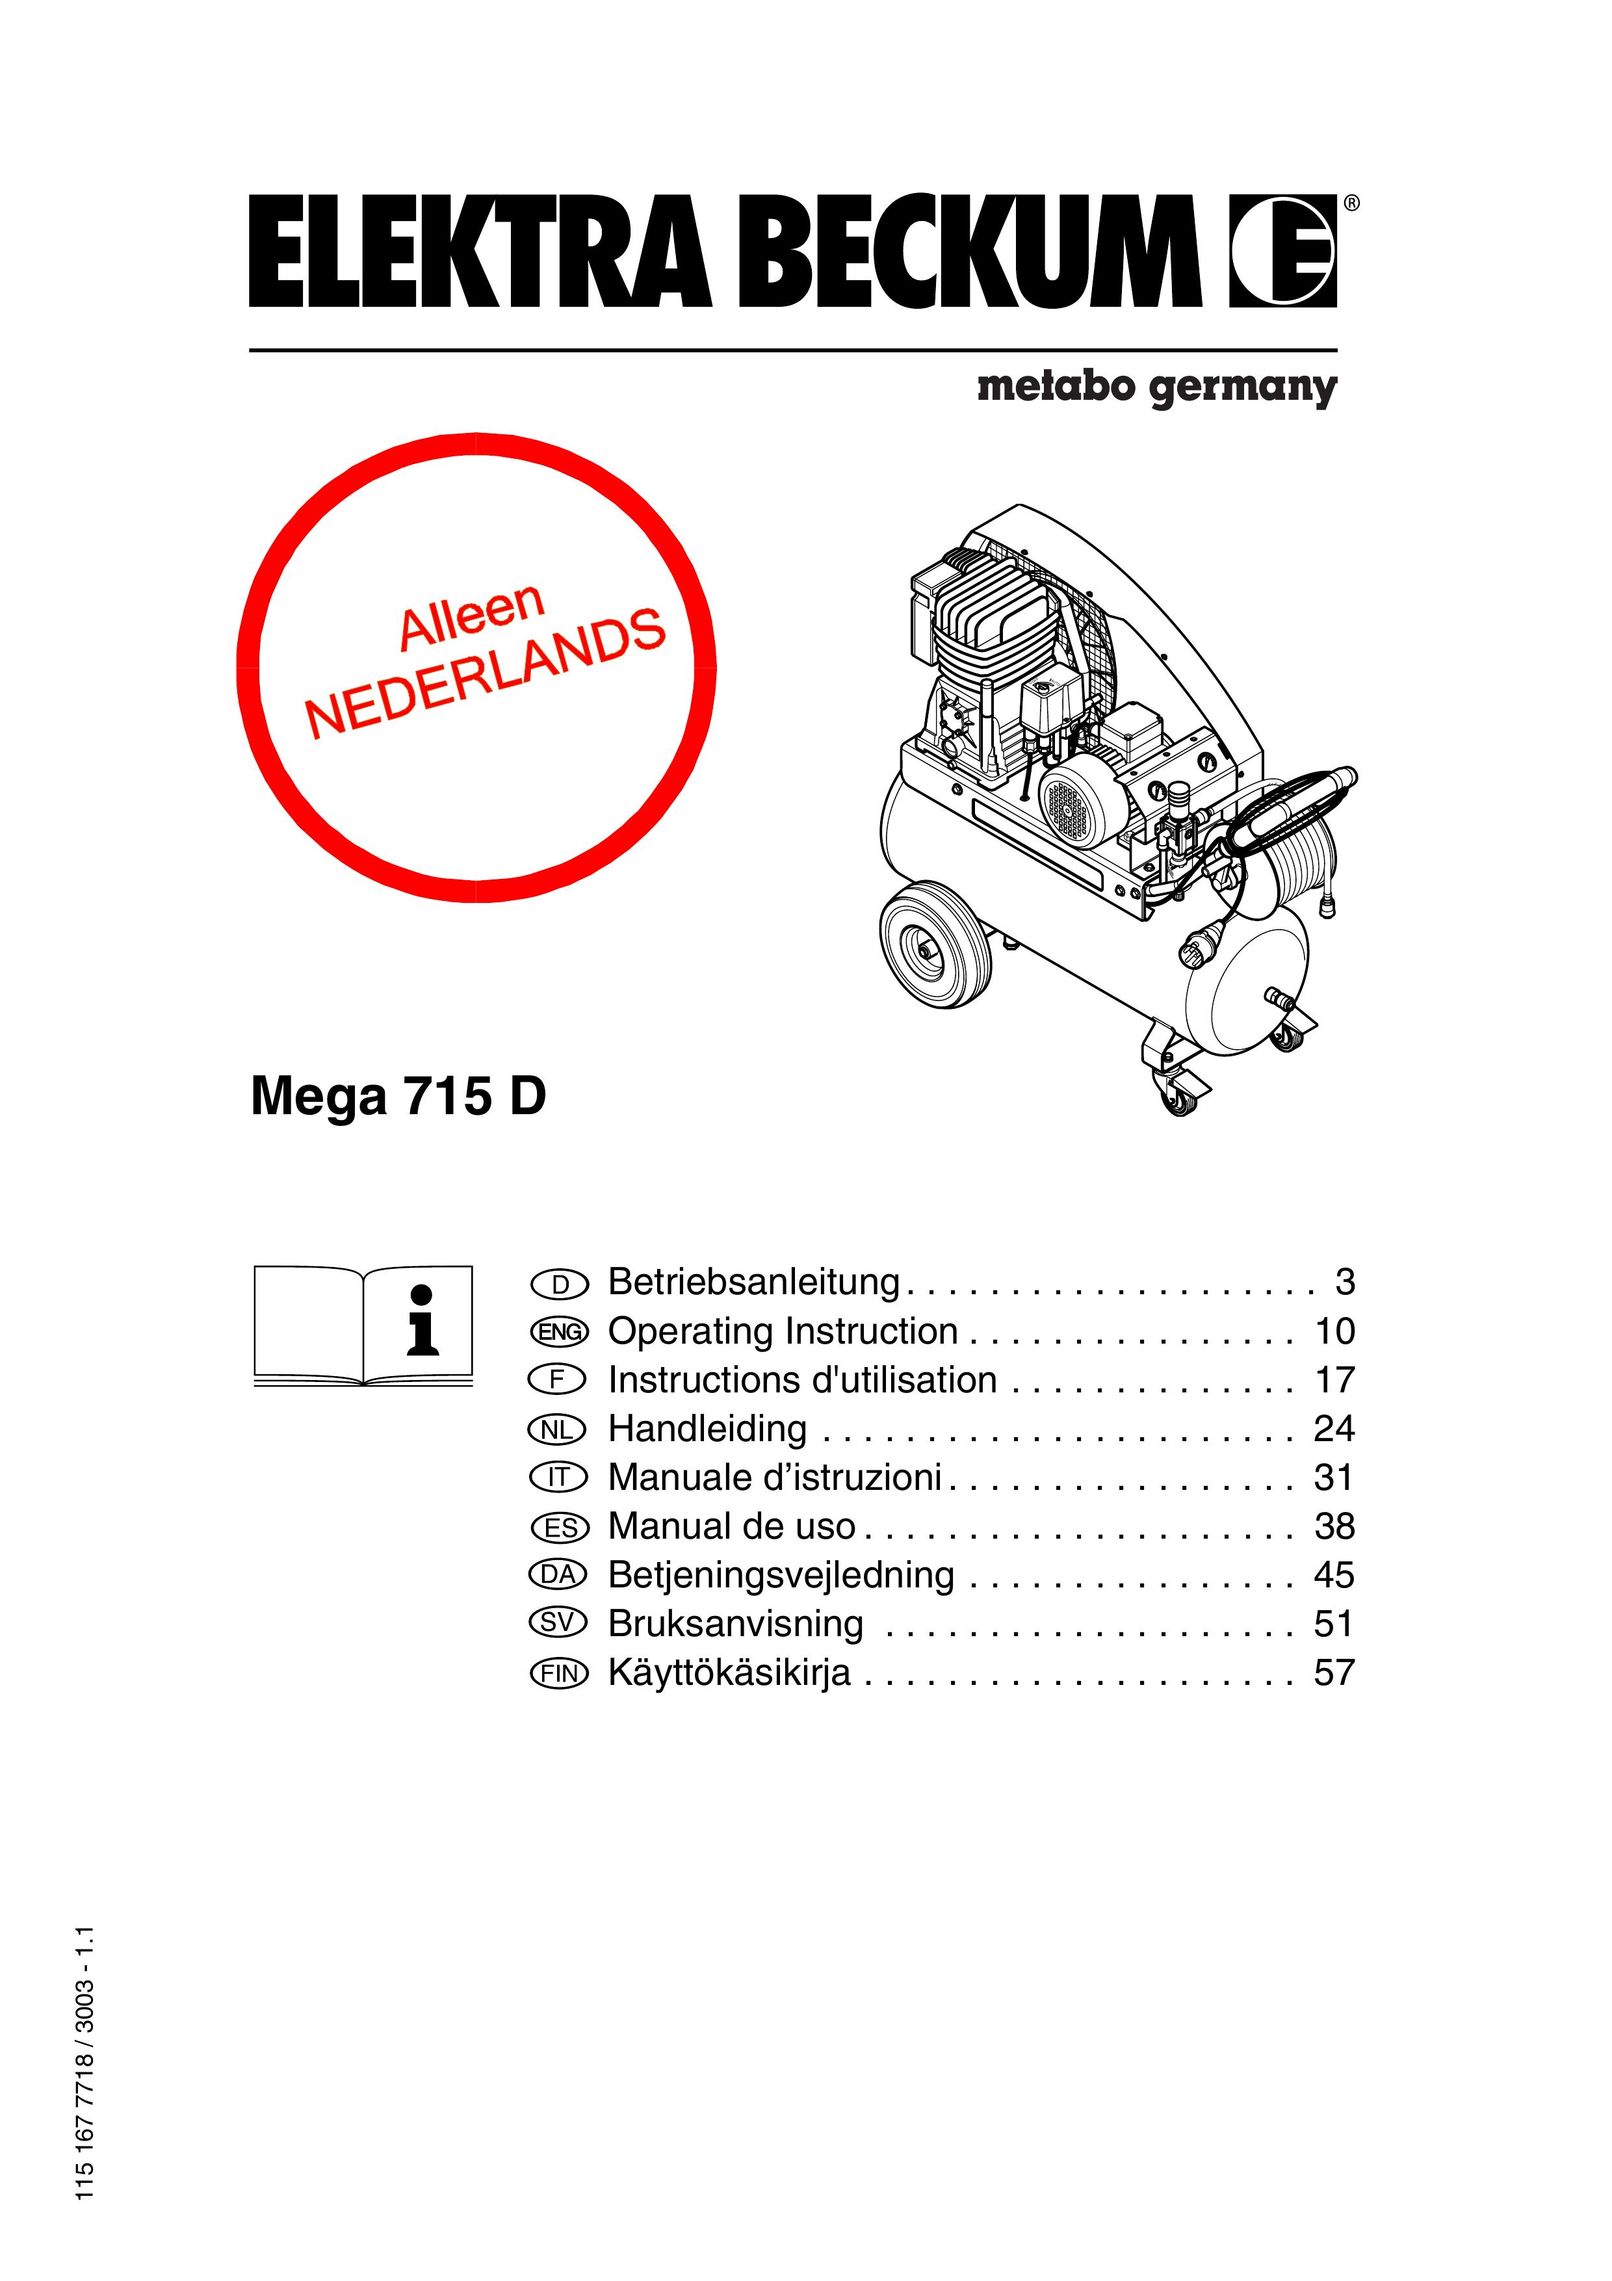 Elektra Beckum Mega 715 D Air Compressor User Manual